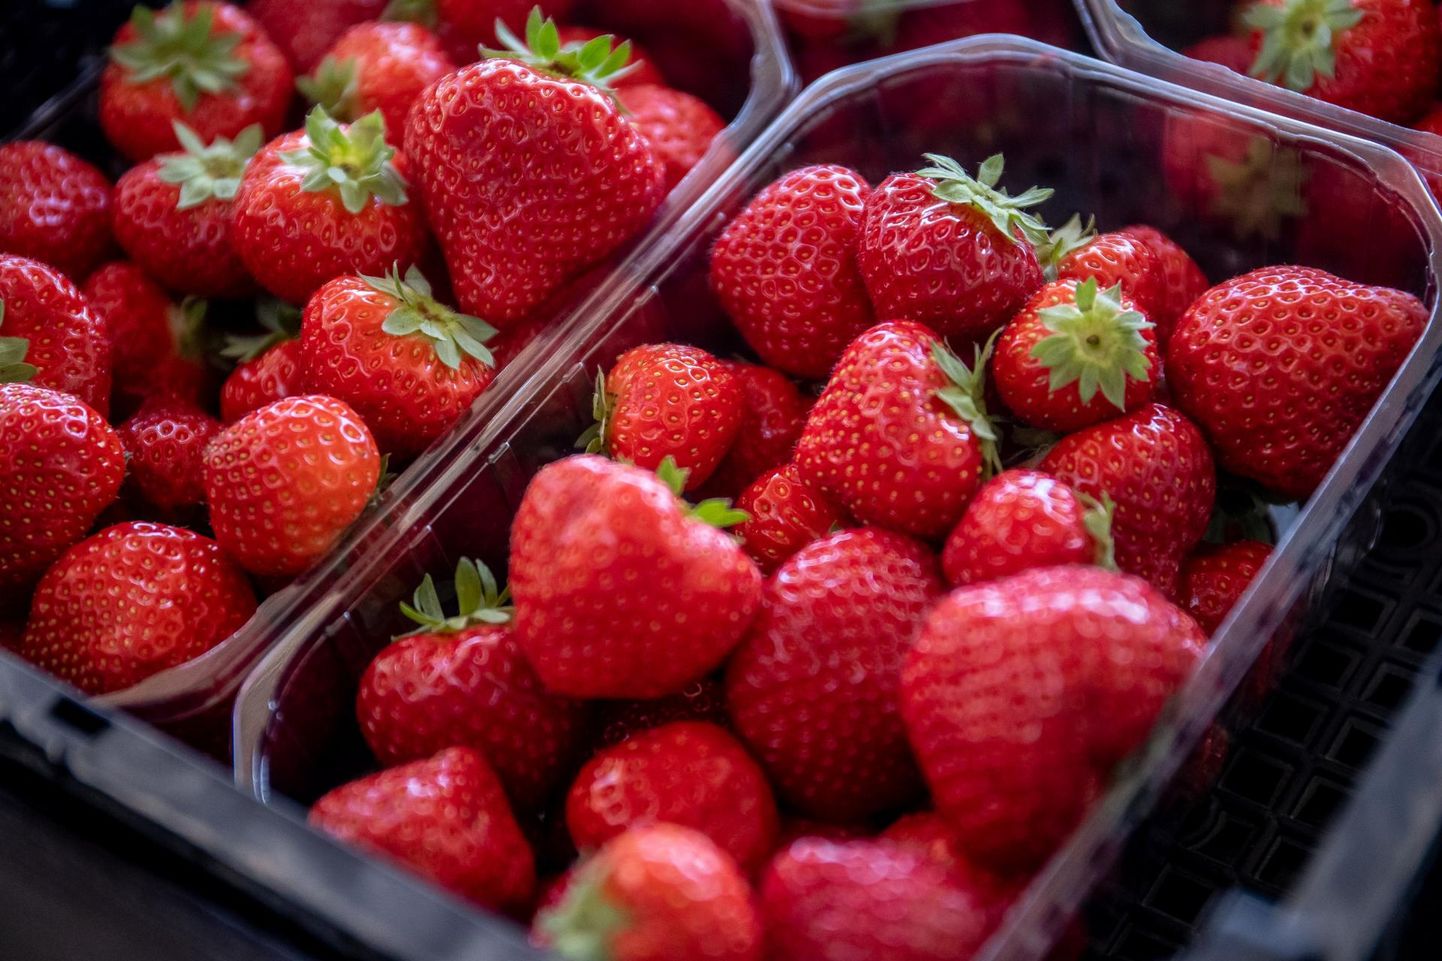 Põllumajandus- ja toiduameti reidil avastati ühel Pärnu turul kaubelnud müüjatest ligemale 50 kilo tõendamata päritolu maasikaid, mis letilt kõrvaldati.